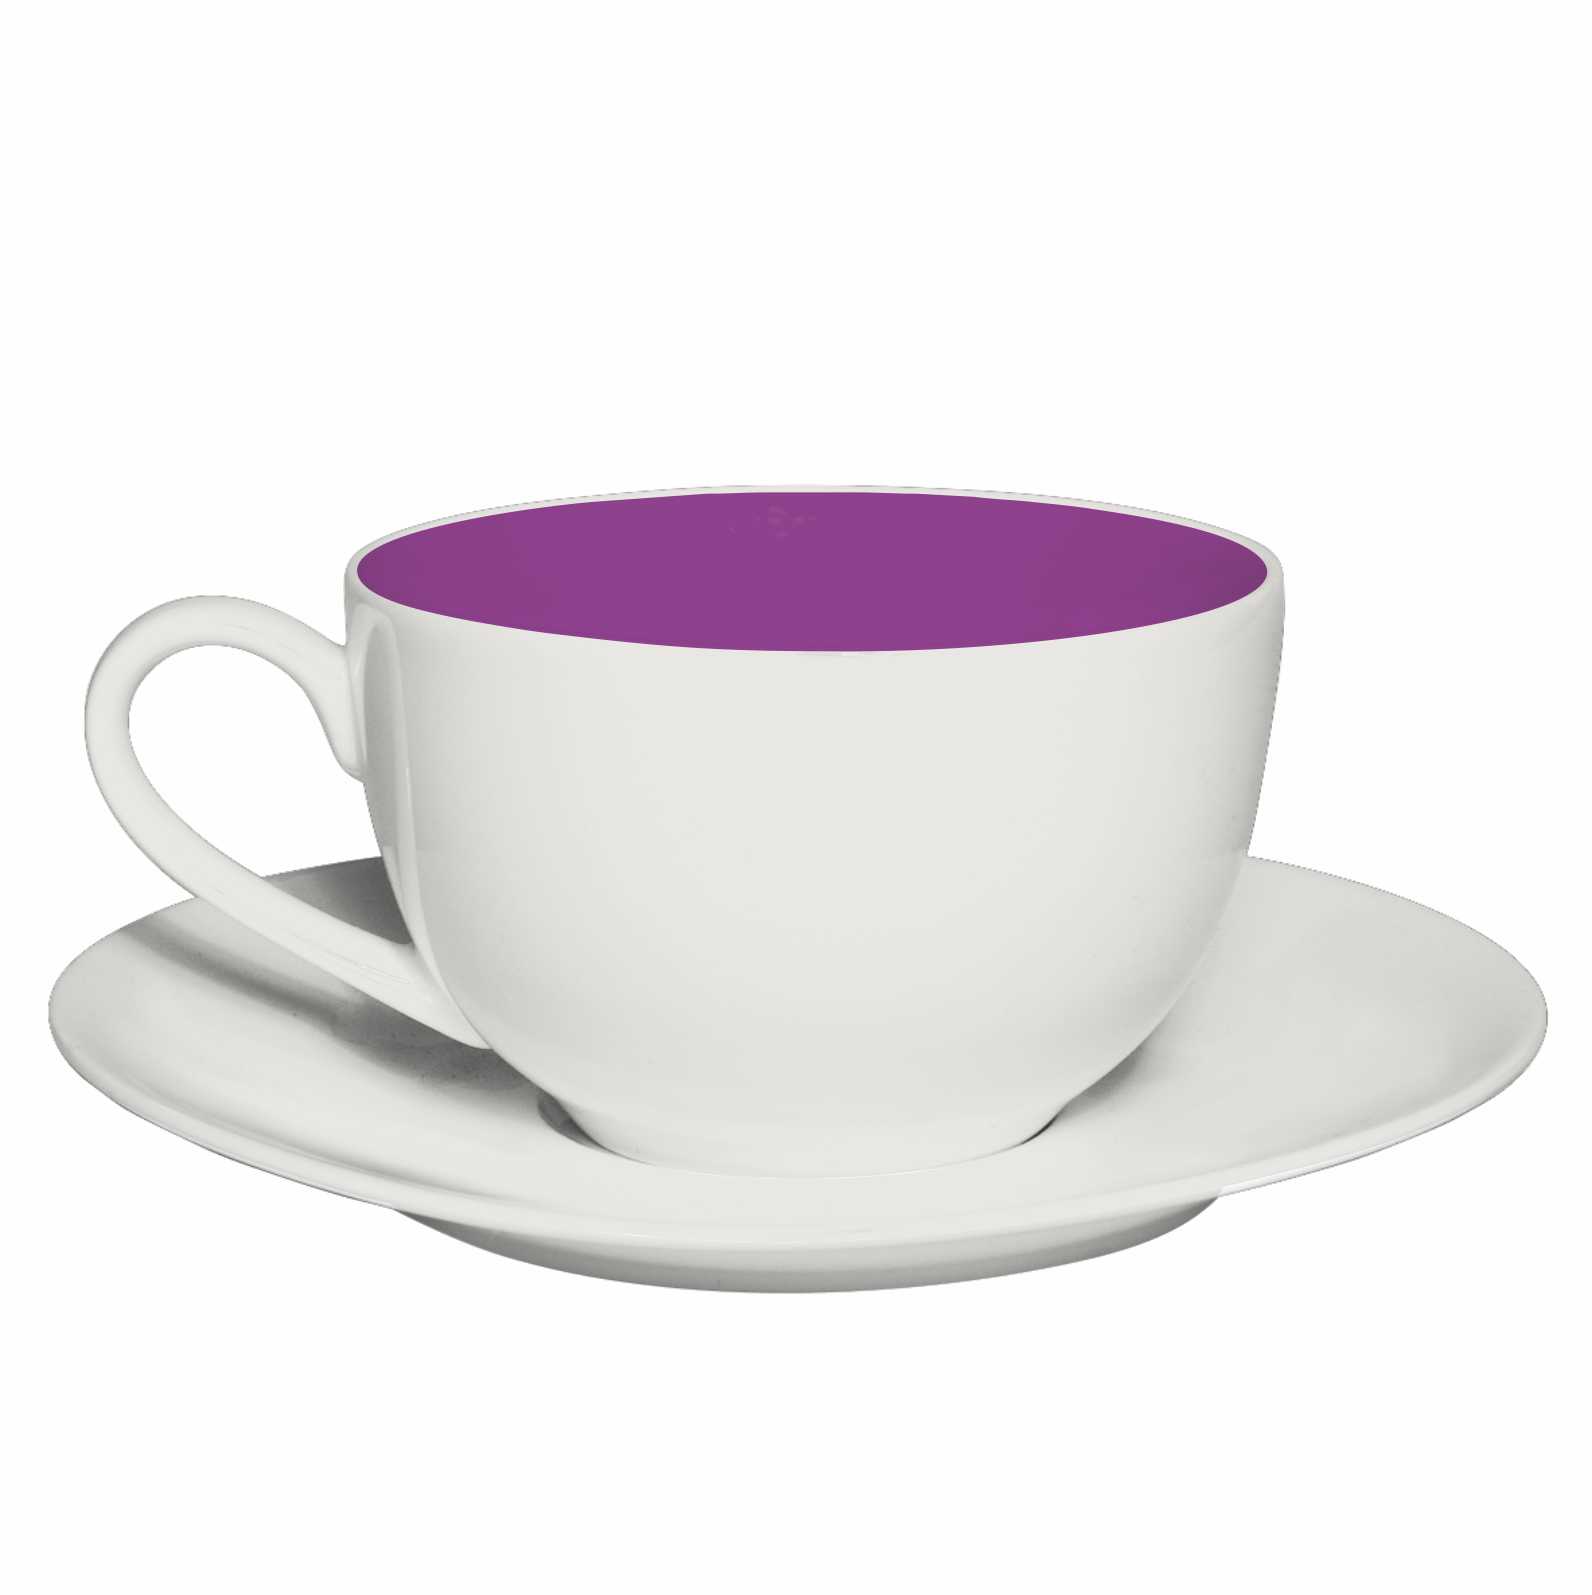 /sites/default/files/2020-03/Fili%C5%BCanka_Olivia_white-purple.jpg